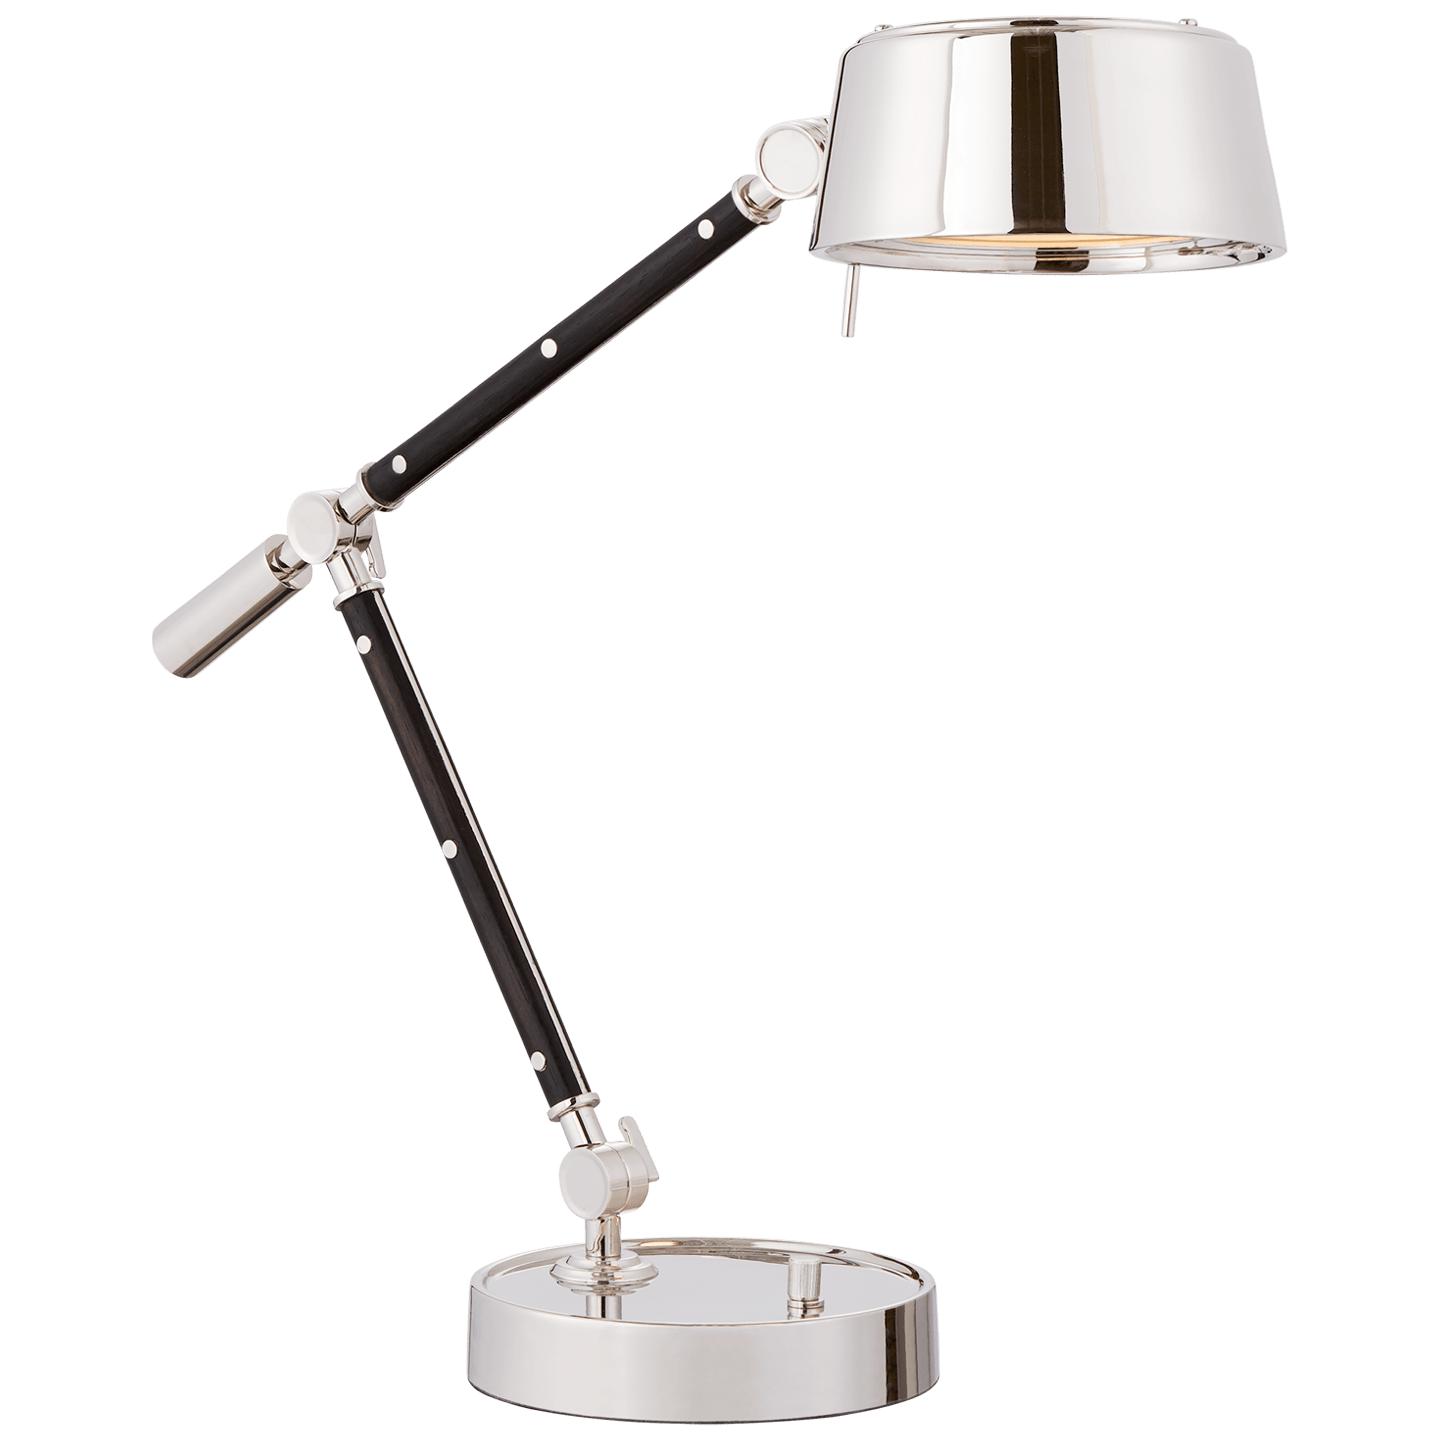 Купить Рабочая лампа Alaster Task Lamp в интернет-магазине roooms.ru